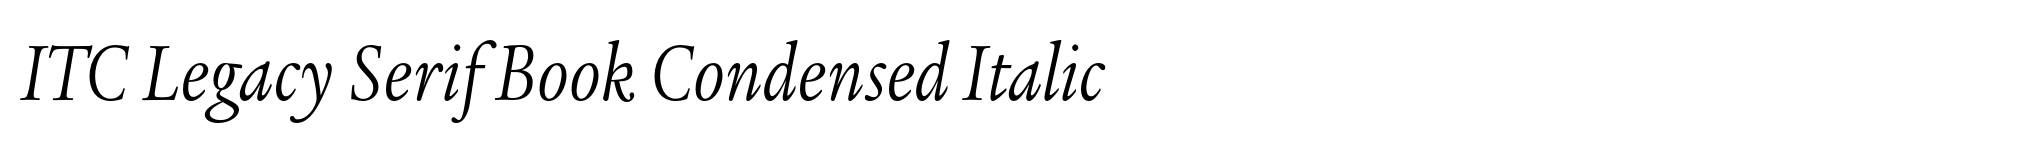 ITC Legacy Serif Book Condensed Italic image